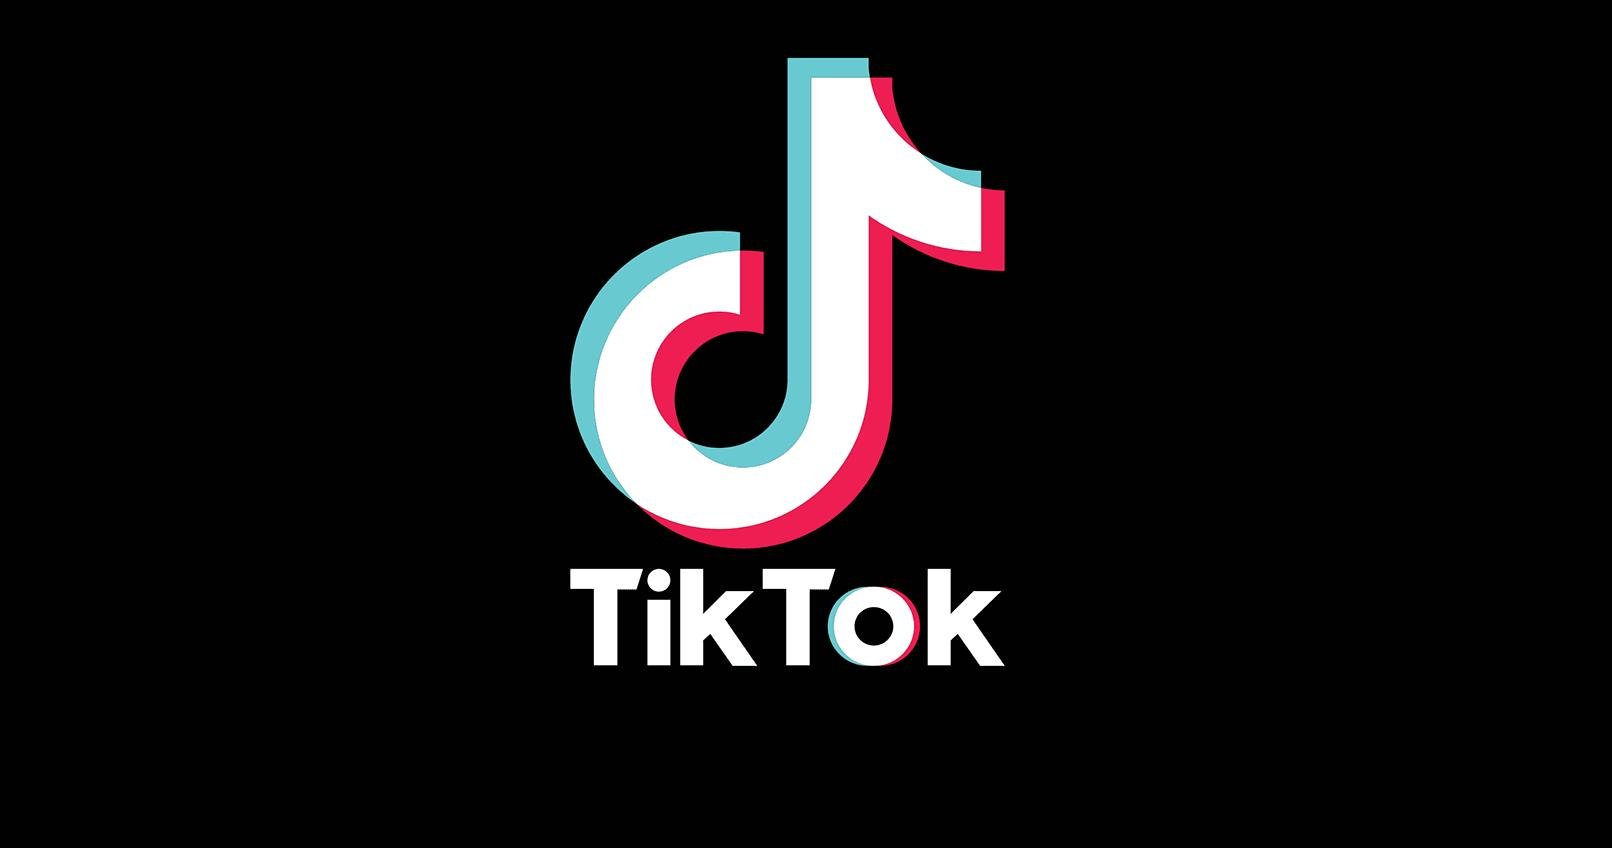 O TikTok é uma das redes sociais que iniciou a era de vídeos curtos e divertidos